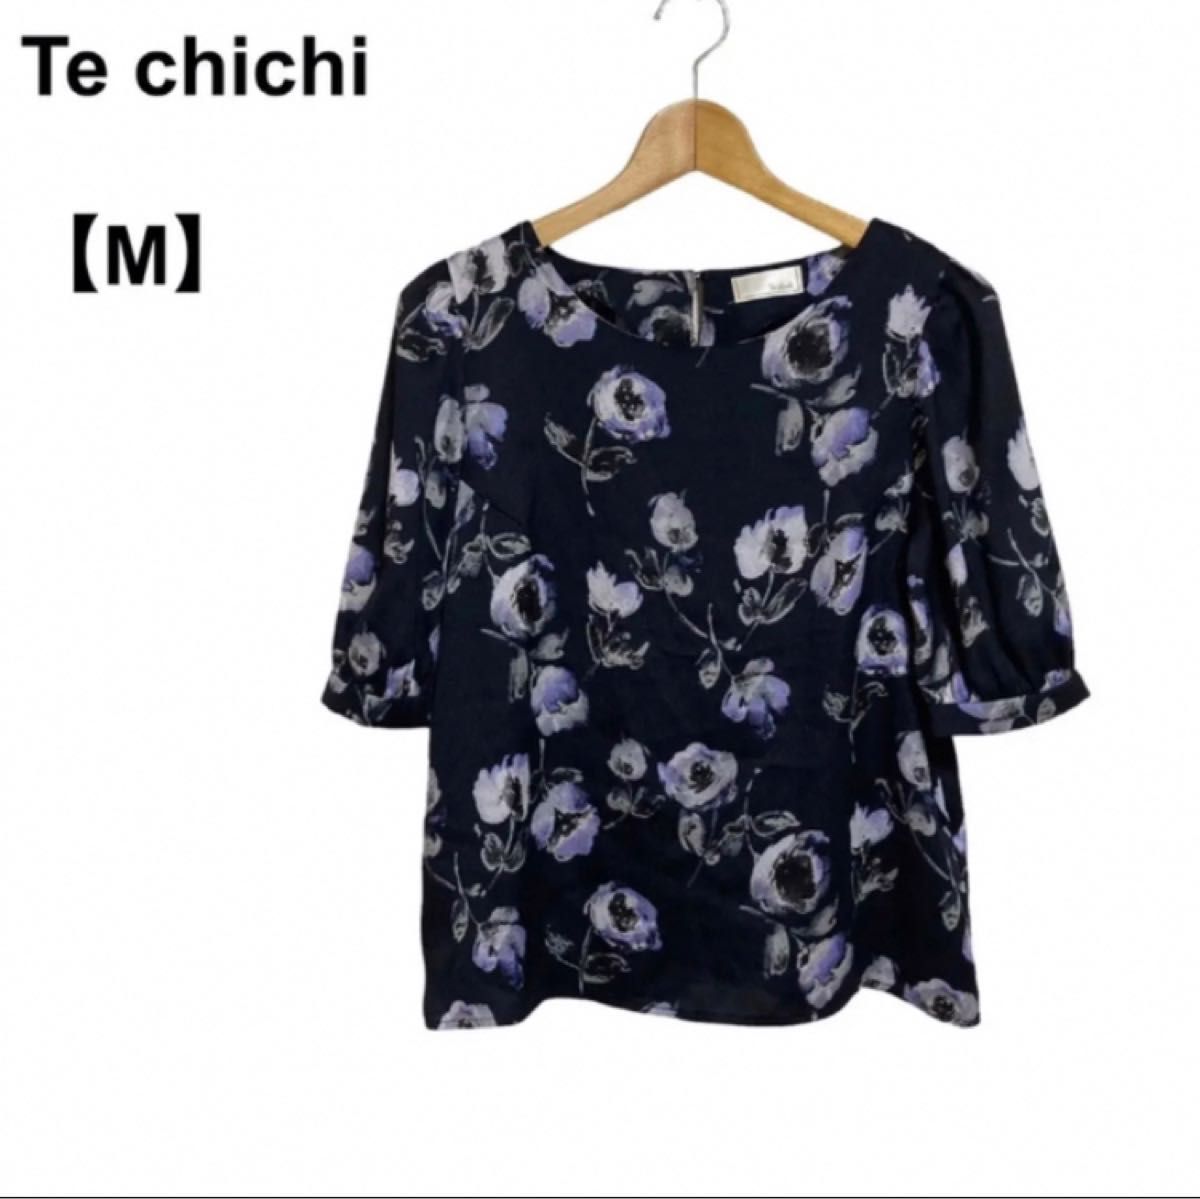 【古着】レディース Techichi テチチ 半袖Tシャツ 半袖カットソー 花柄